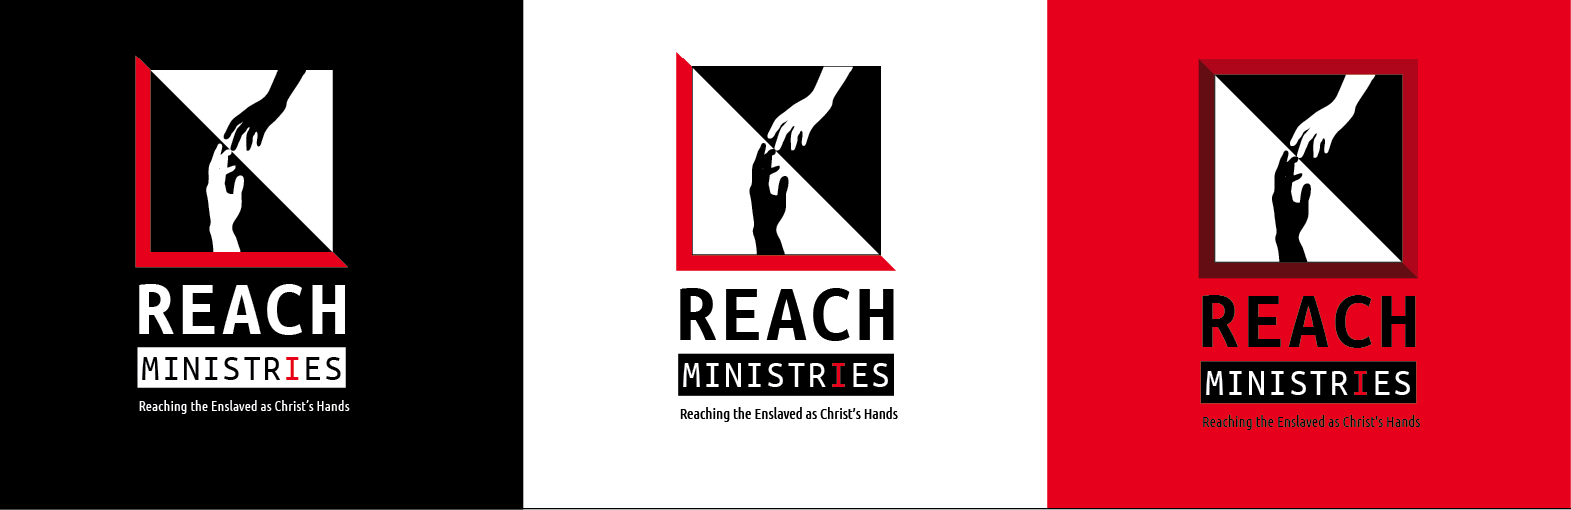 reach-logo-trial-2